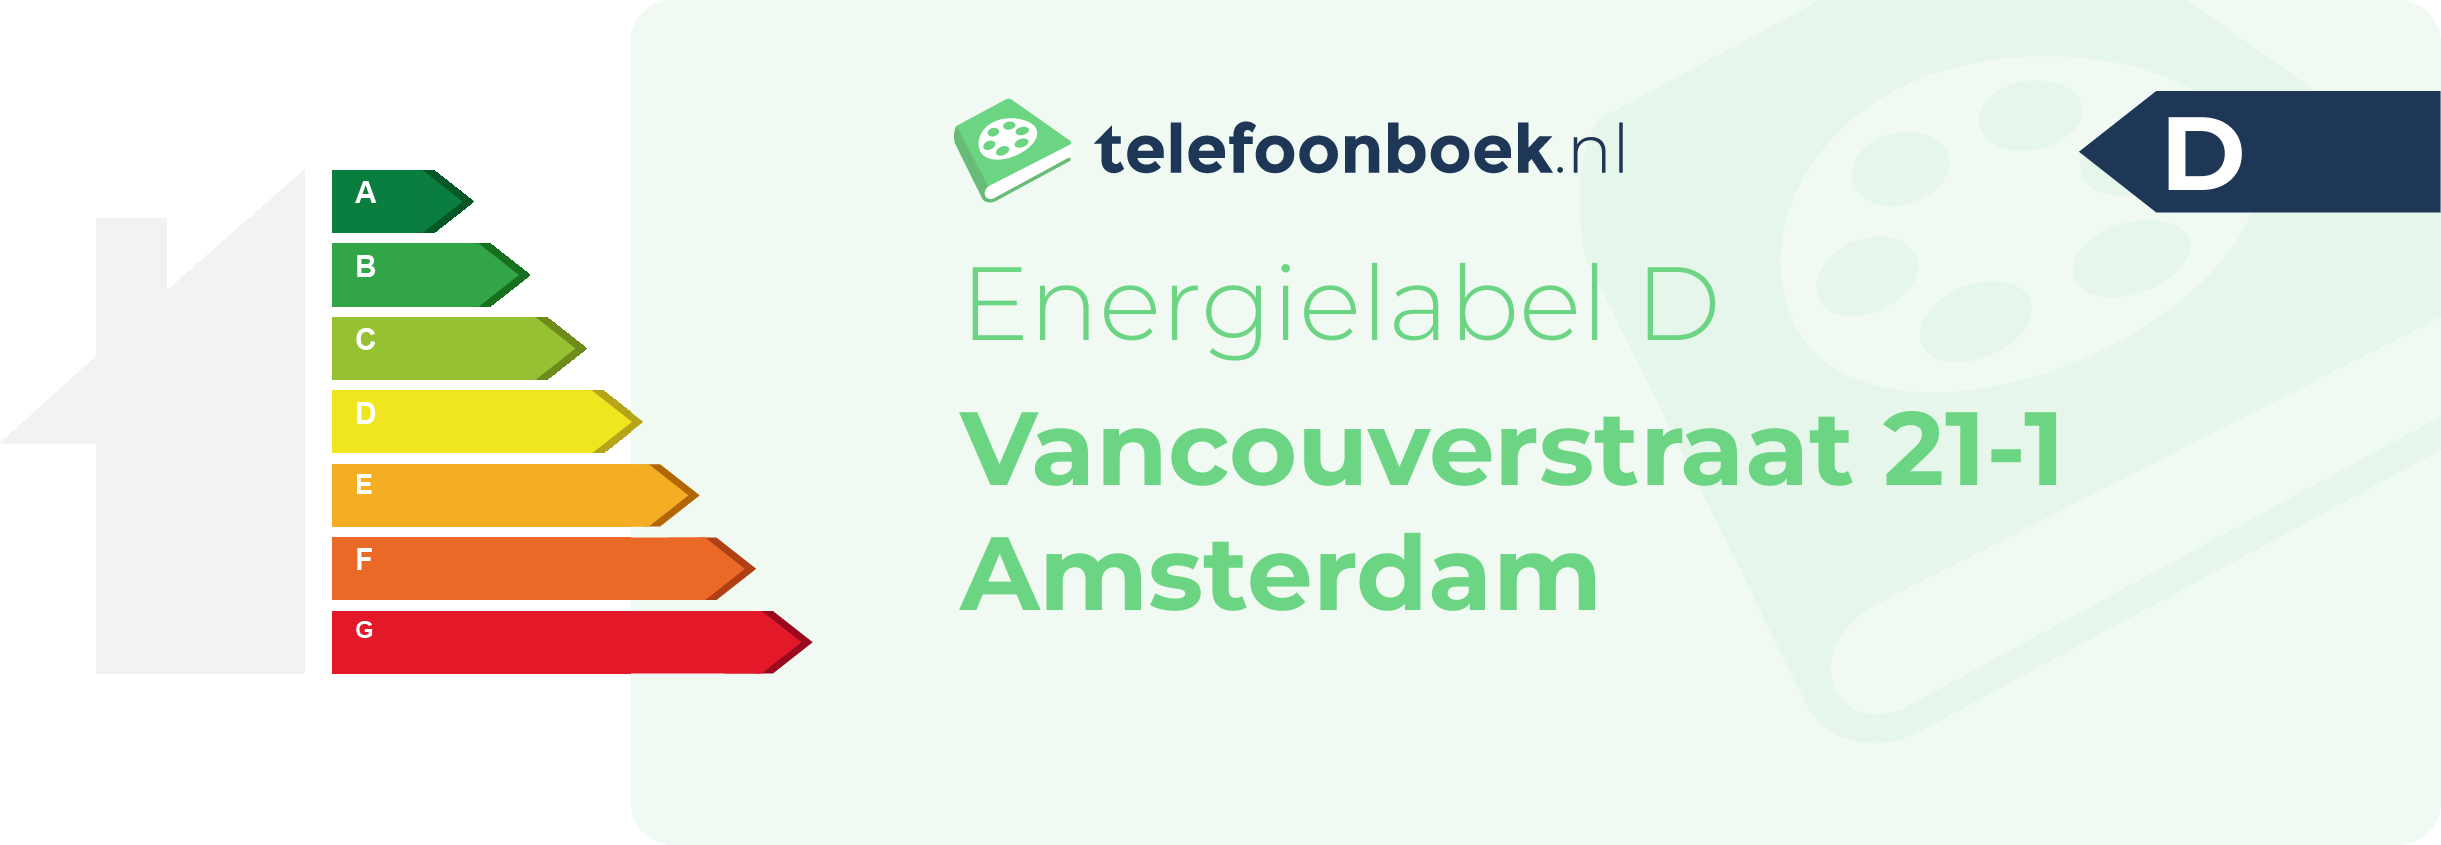 Energielabel Vancouverstraat 21-1 Amsterdam